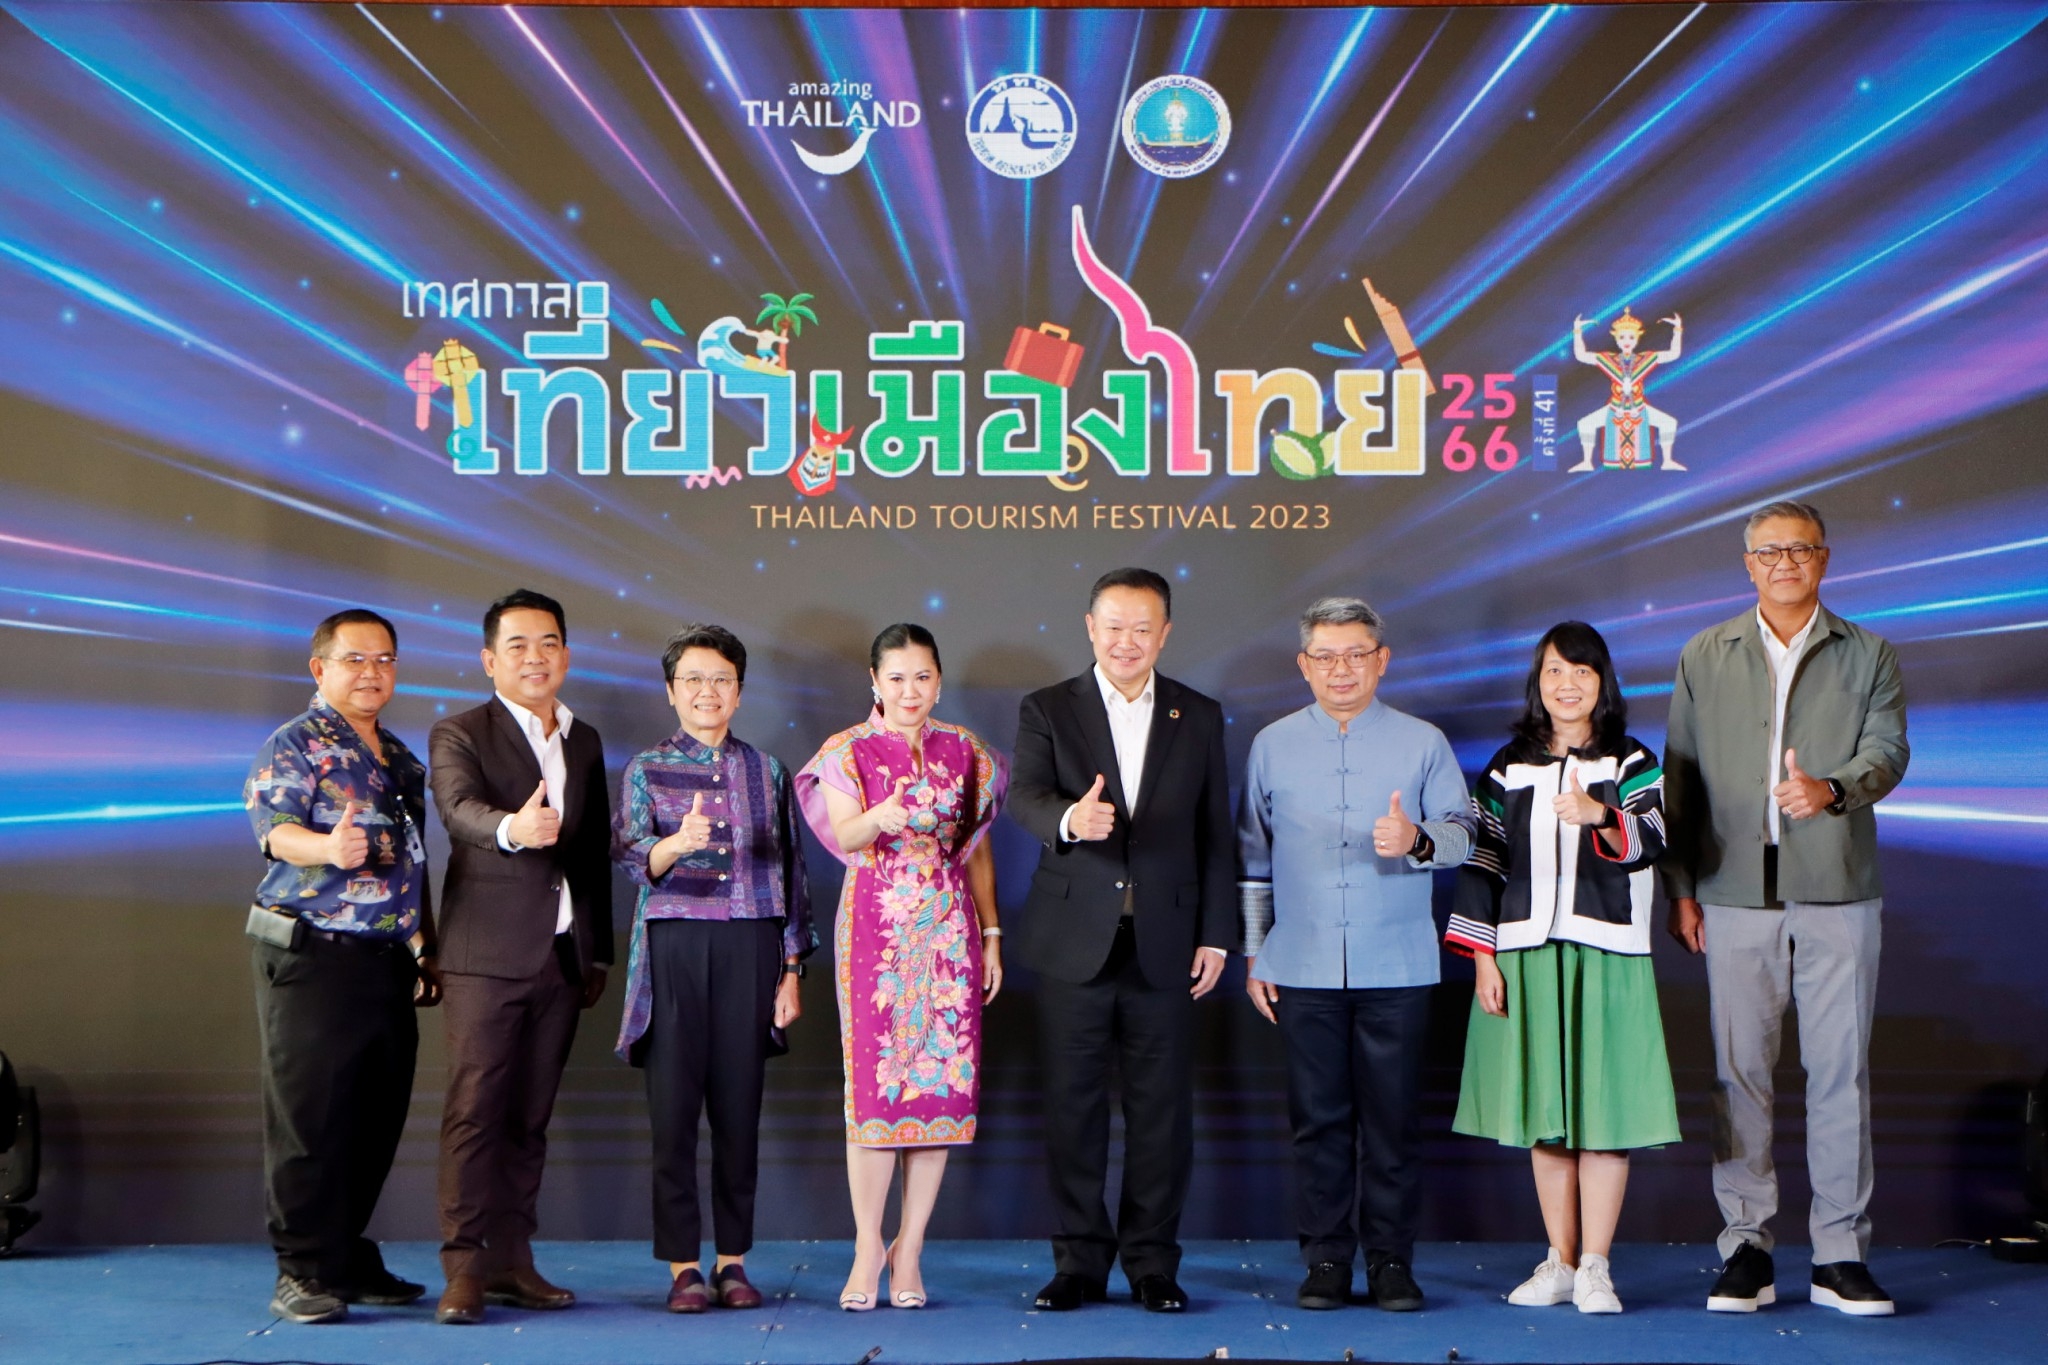 ททท. ชวนแกะกล่องความมหัศจรรย์ของเมืองไทย กับงาน “เทศกาลเที่ยวเมืองไทย ครั้งที่ 41 ปี 2566” จัดเต็มท่องเที่ยวมิติใหม่ที่สุขใจกว่าที่เคย 2-6 สิงหาคมนี้ ณ ศูนย์การประชุมแห่งชาติสิริกิติ์